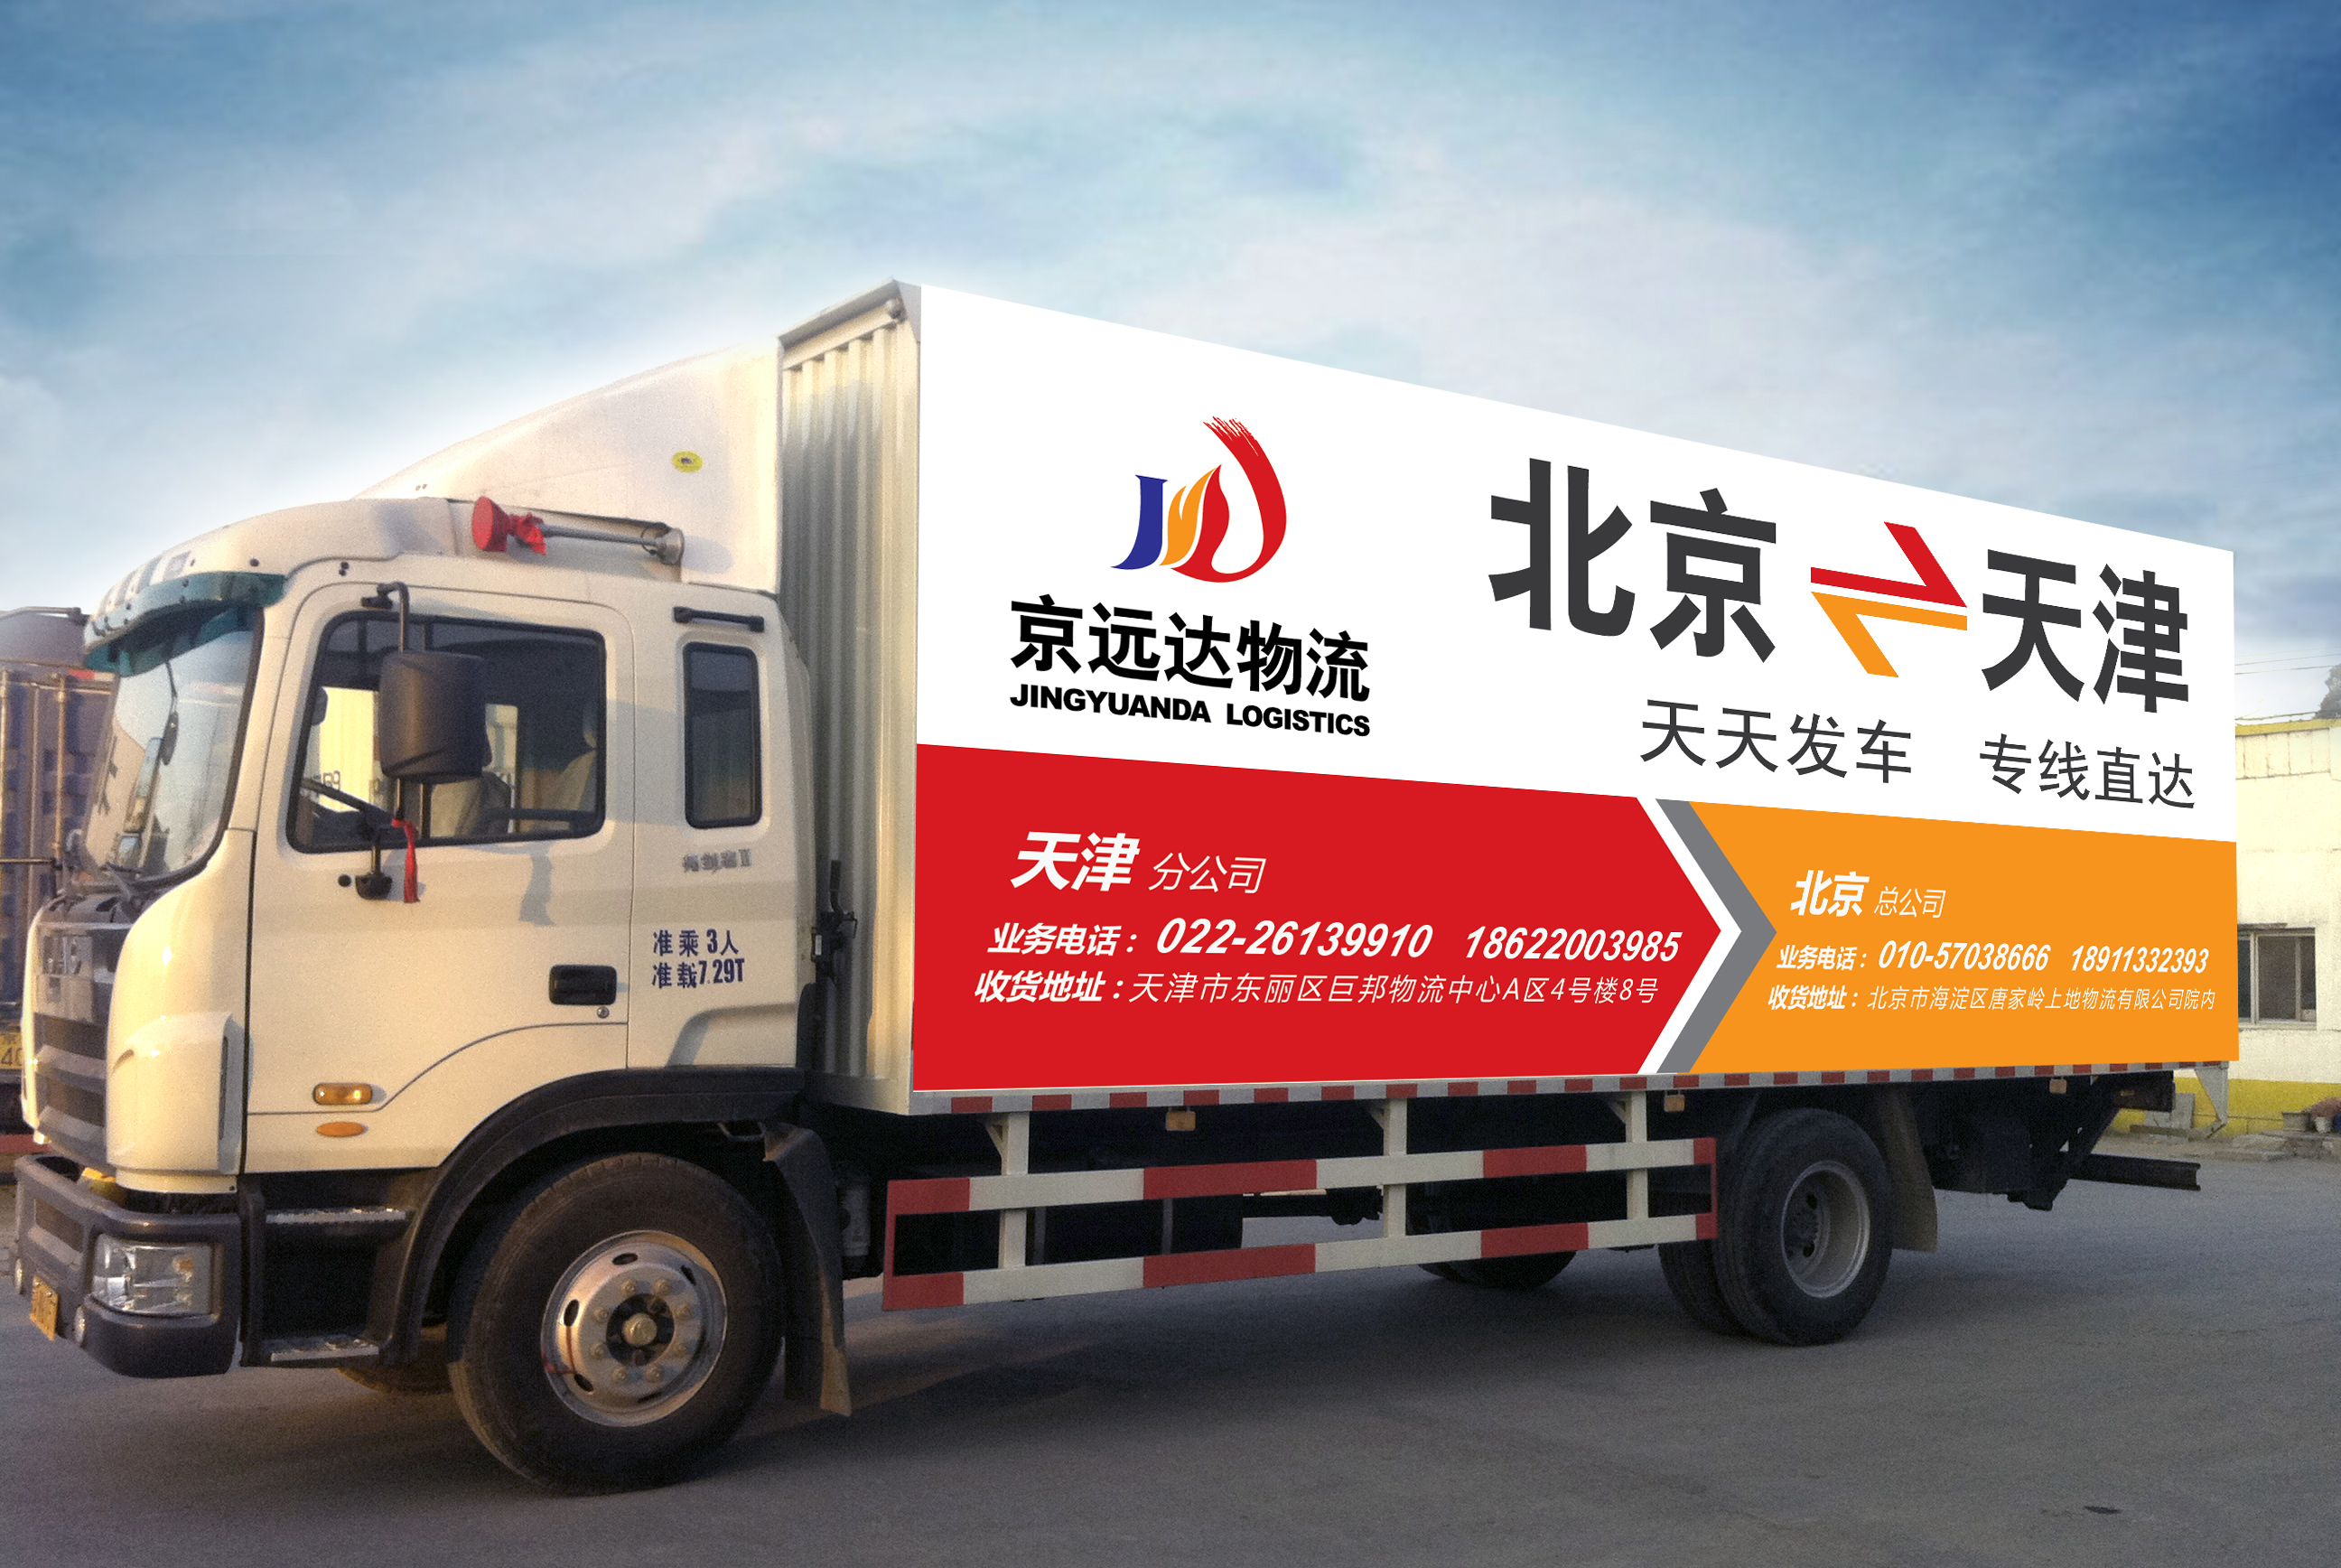 北京京远达物流有限公司 长途搬家 长途货运 报价单随时可以查阅